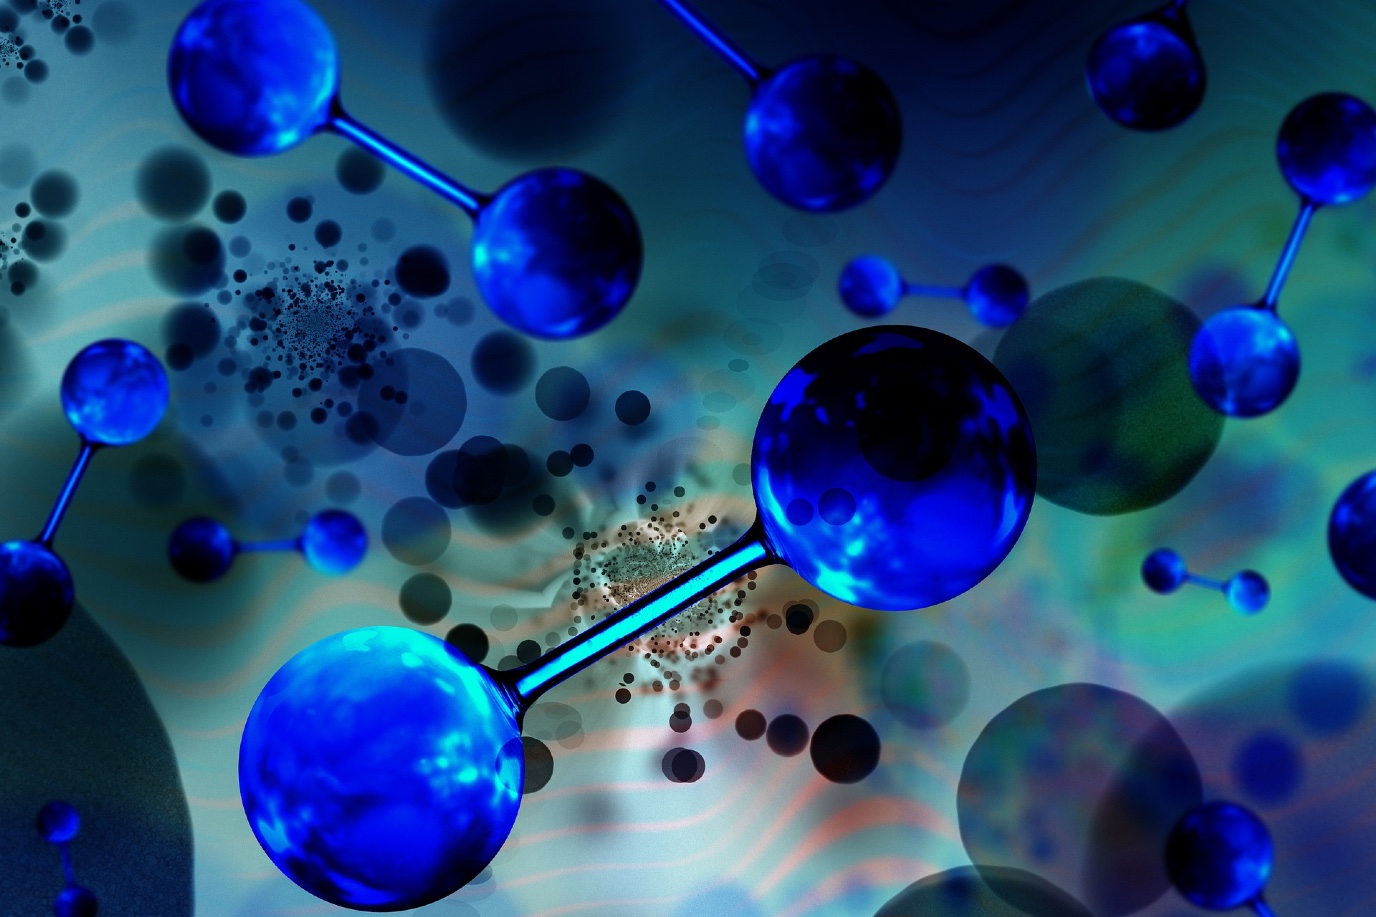 Waterstofmoleculen Afbeelding van Gerd Altmann / Pixabay